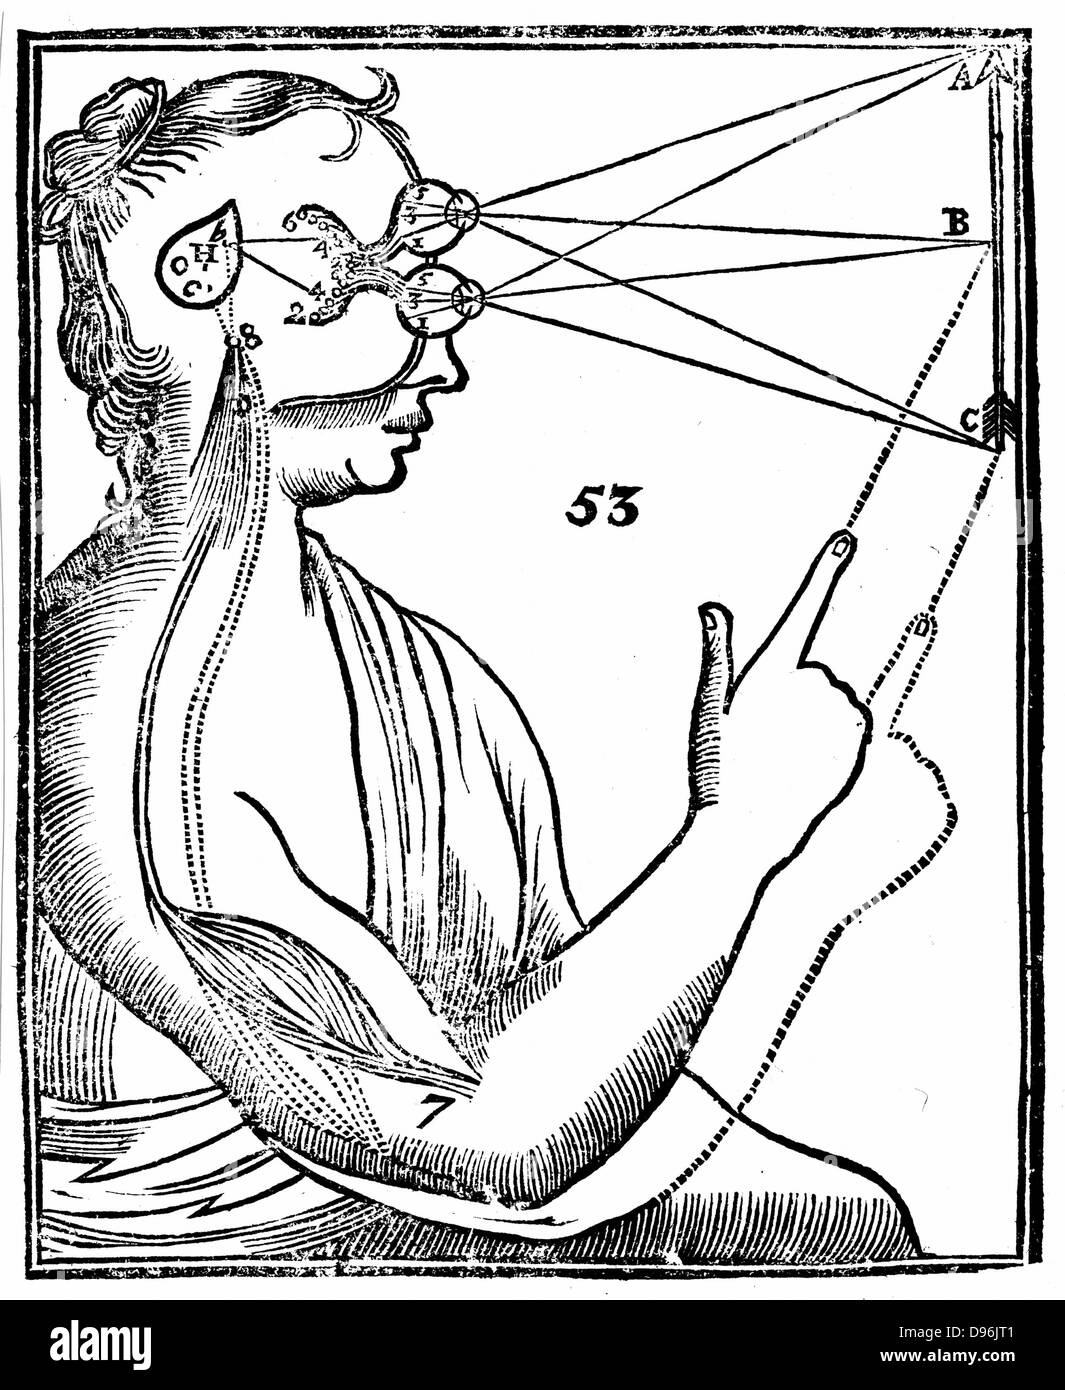 Cartesio' idea di visione, che mostra il passaggio di impulso nervoso dall'occhio alla ghiandola pineale e così per i muscoli. Dal Rene Descartes' 'Opera Philosophica', 1692 (Tractatus de homine). Xilografia Foto Stock